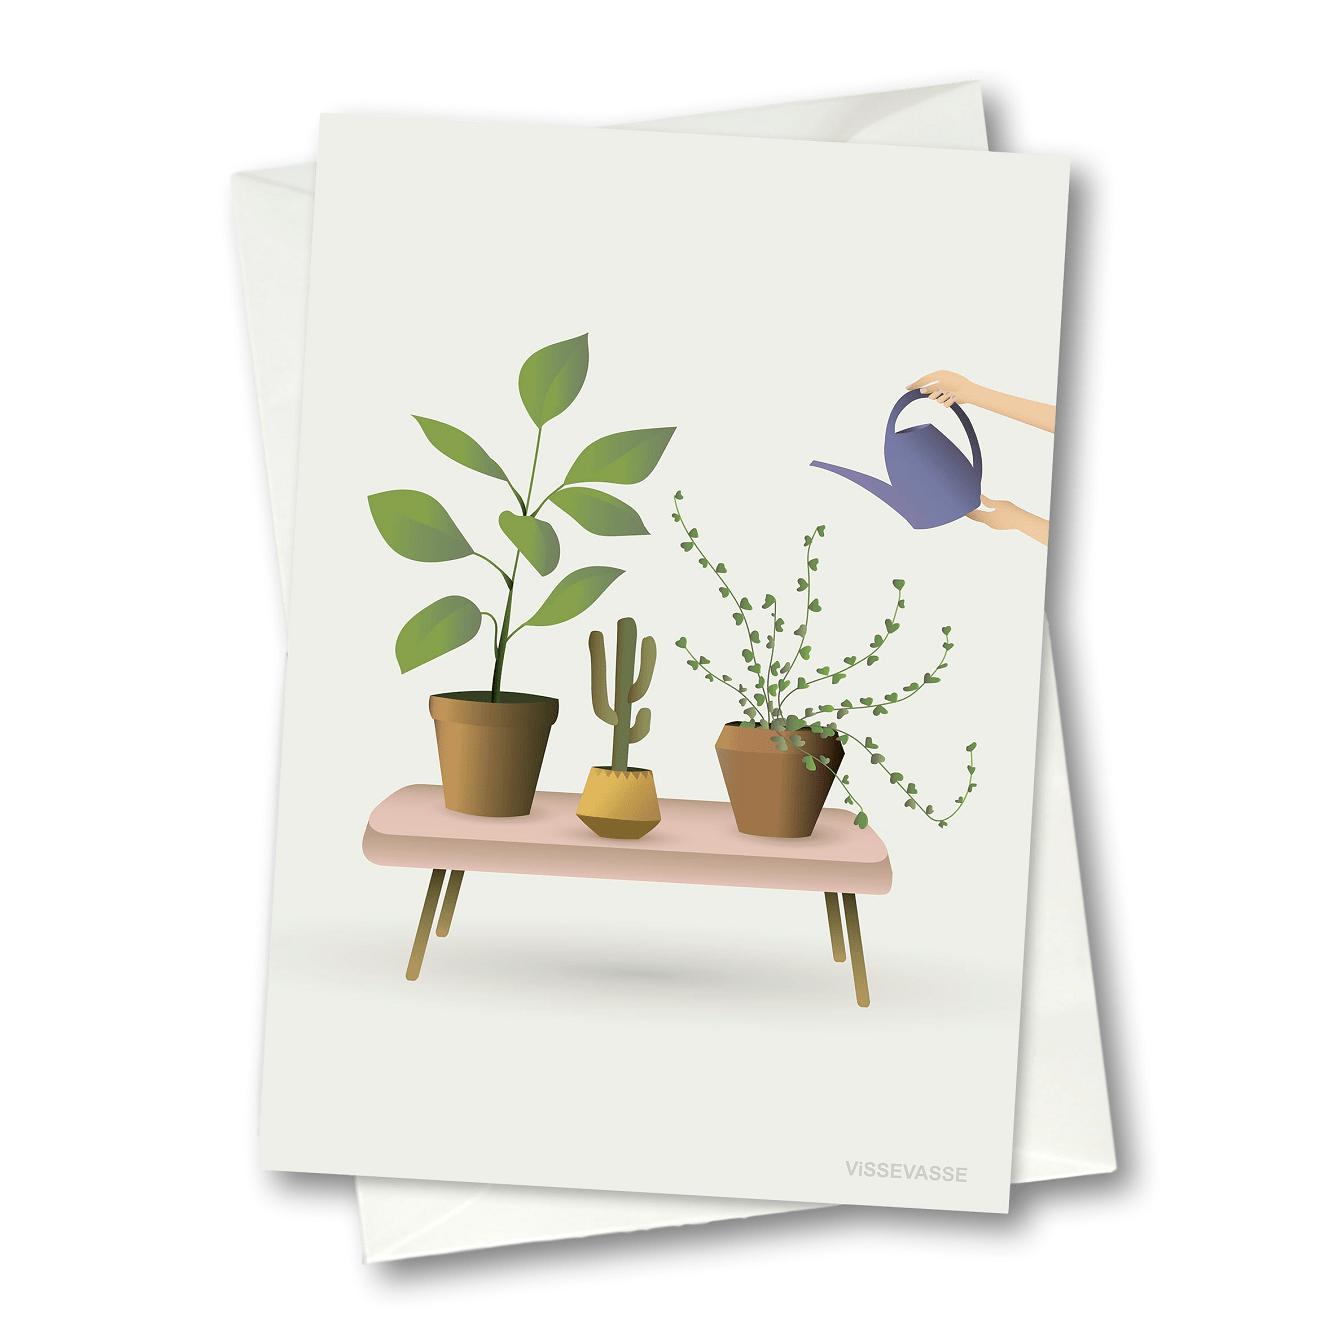 Vissevasse Culture Plants Card, 10,5x15cm